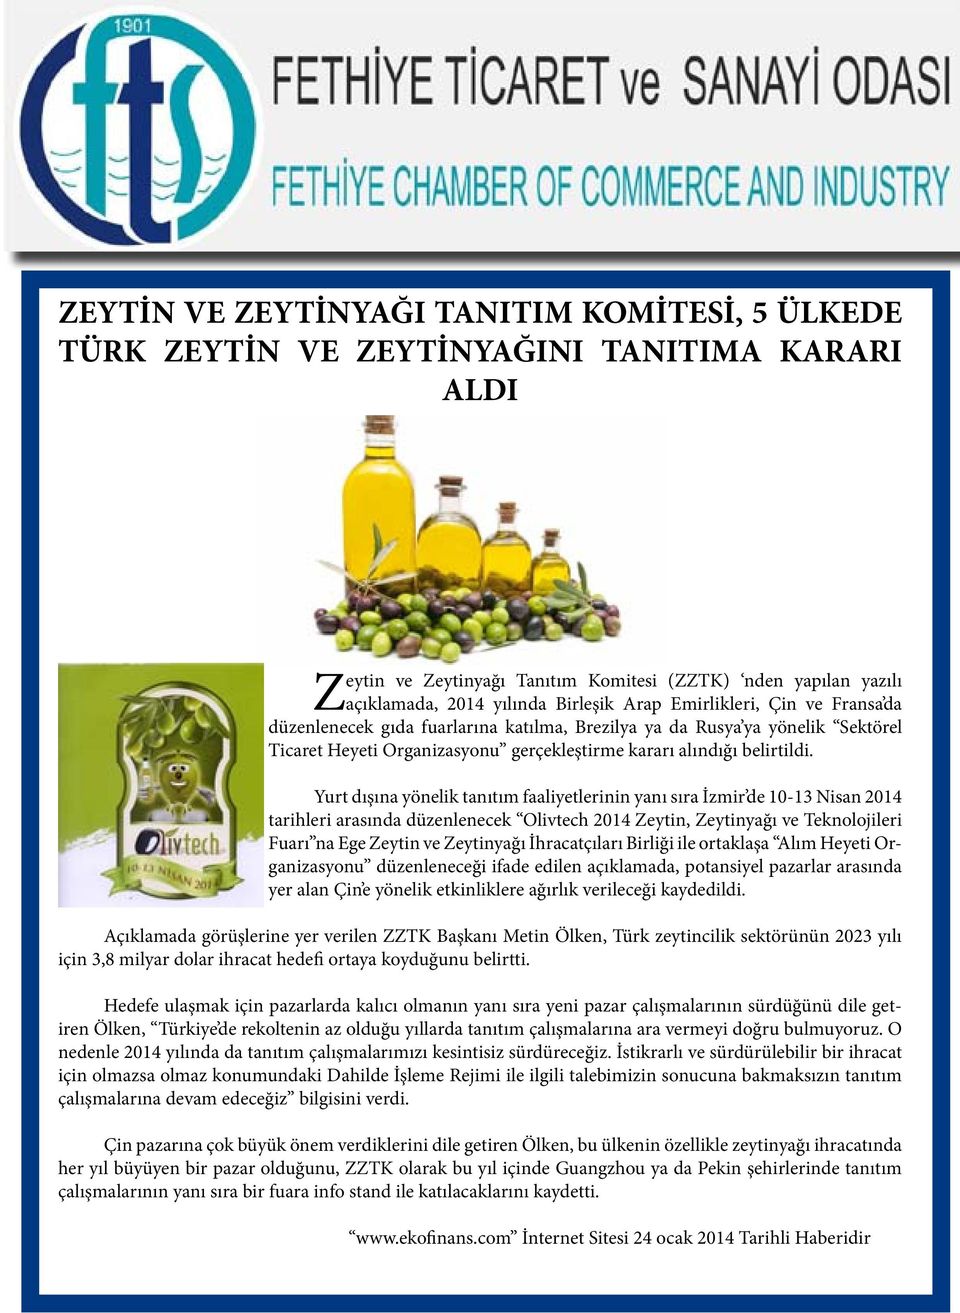 Yurt dışına yönelik tanıtım faaliyetlerinin yanı sıra İzmir de 10-13 Nisan 2014 tarihleri arasında düzenlenecek Olivtech 2014 Zeytin, Zeytinyağı ve Teknolojileri Fuarı na Ege Zeytin ve Zeytinyağı